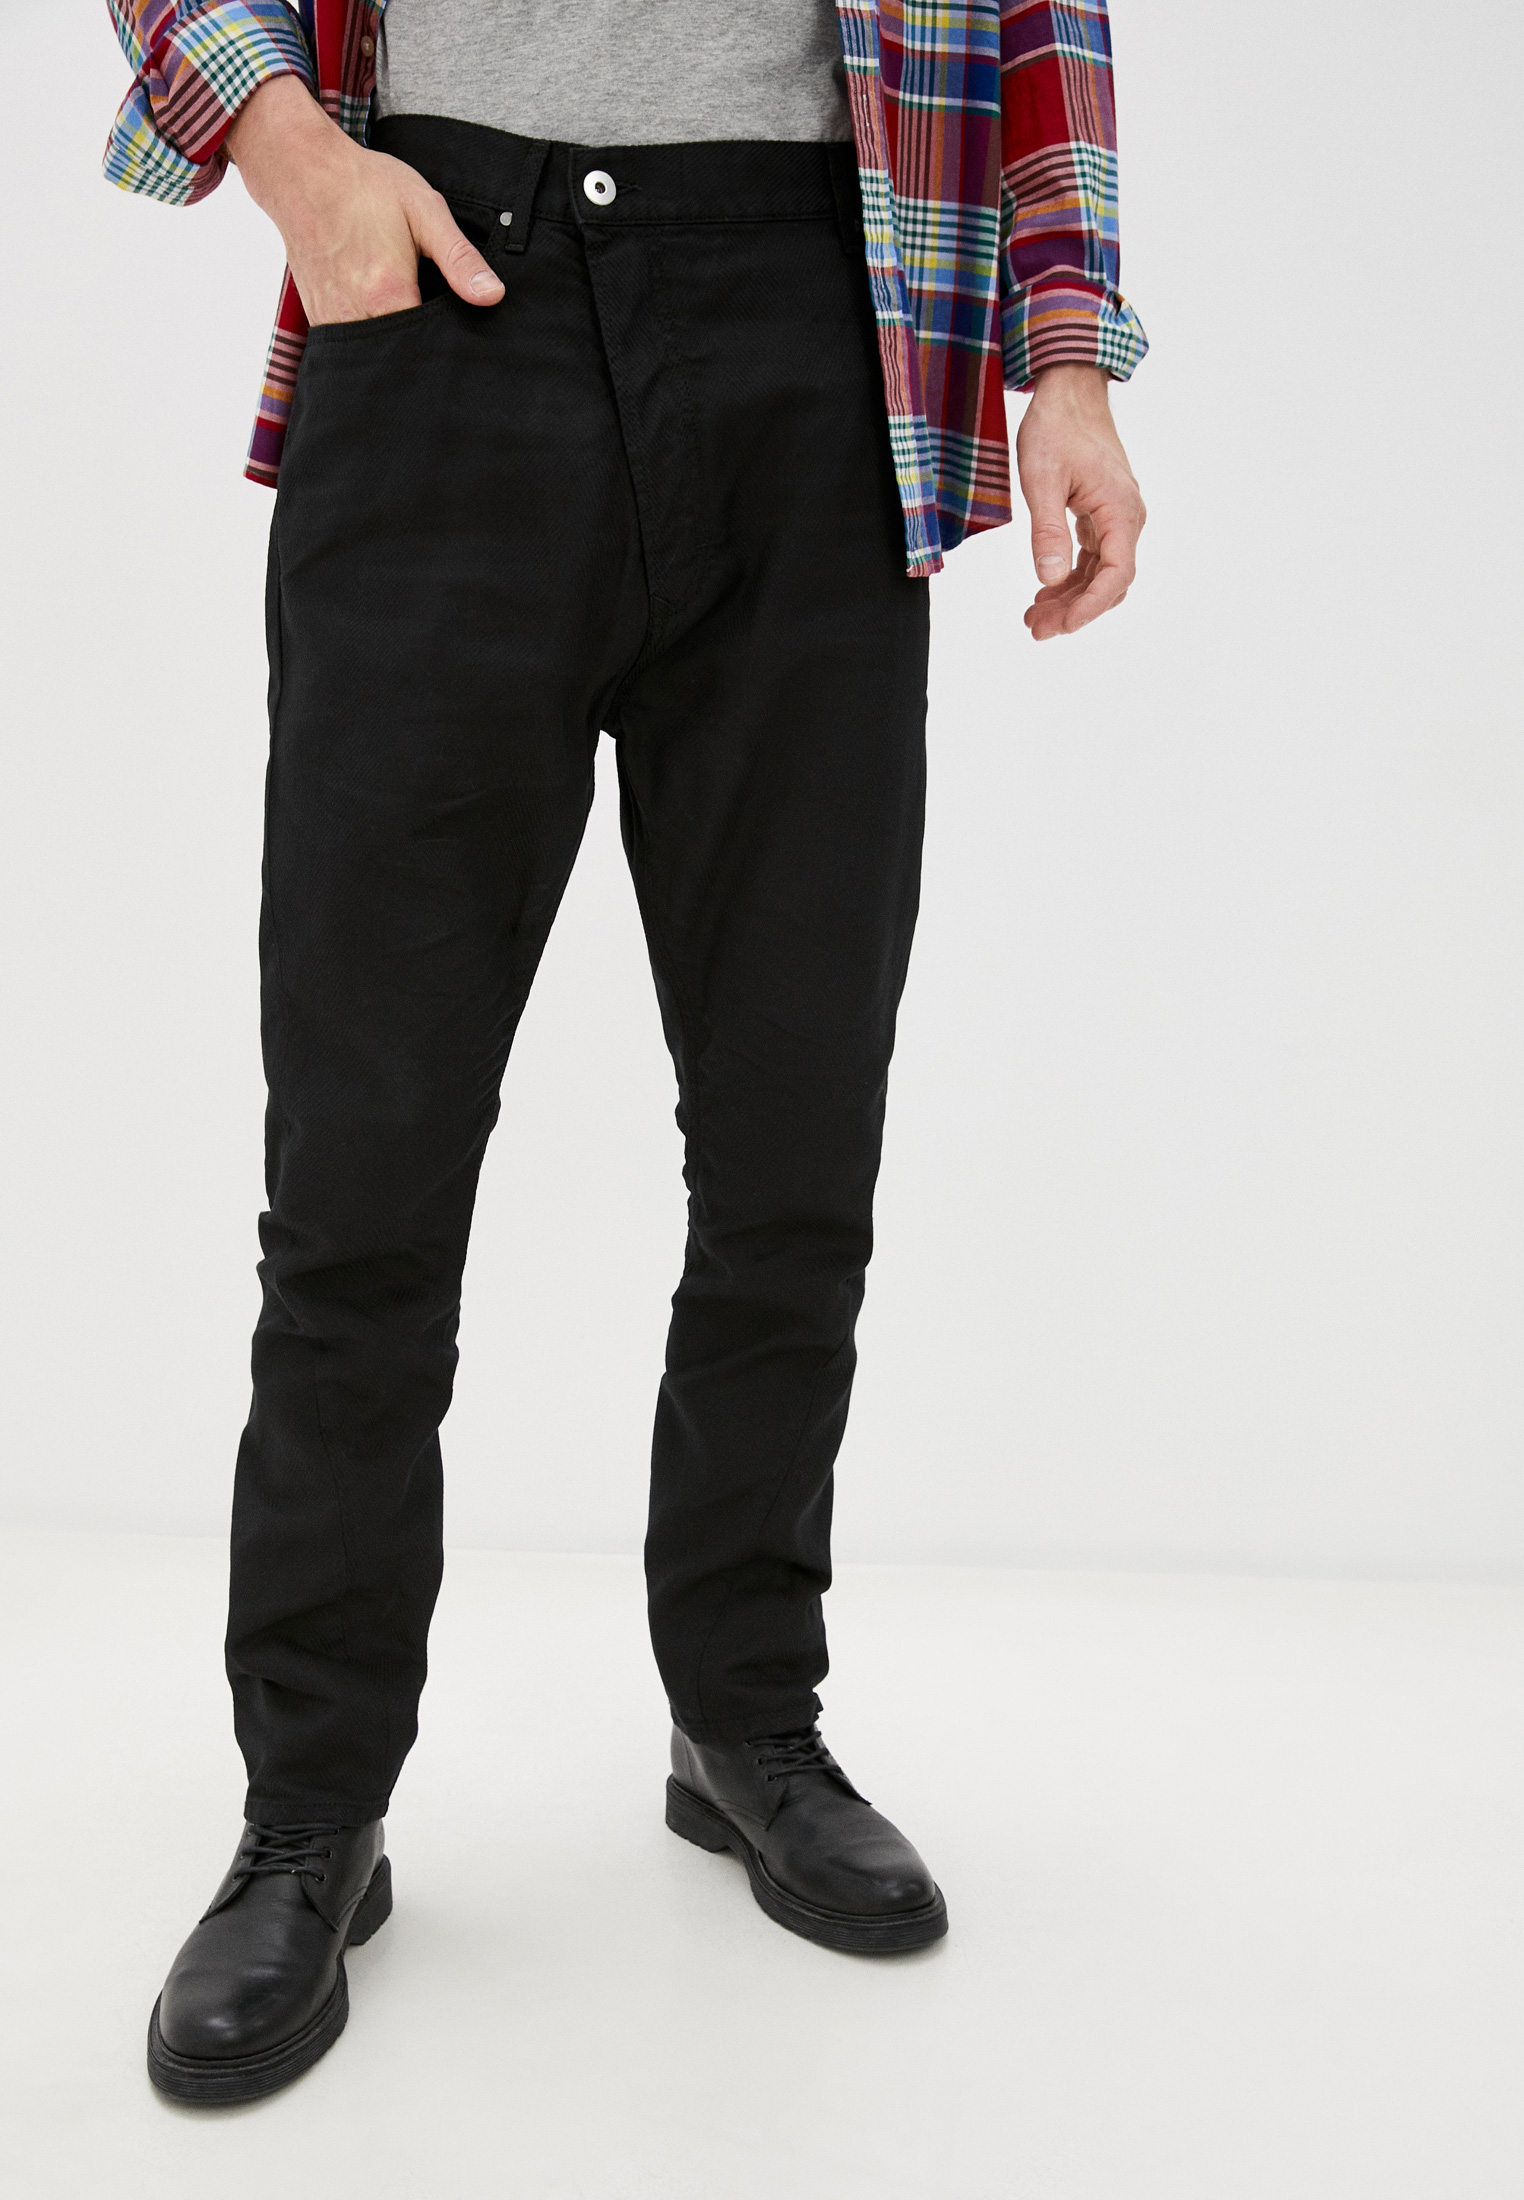 Мужские брюки Vivienne Westwood (Вивьен Вествуд) 28020028-11576-DE: изображение 1